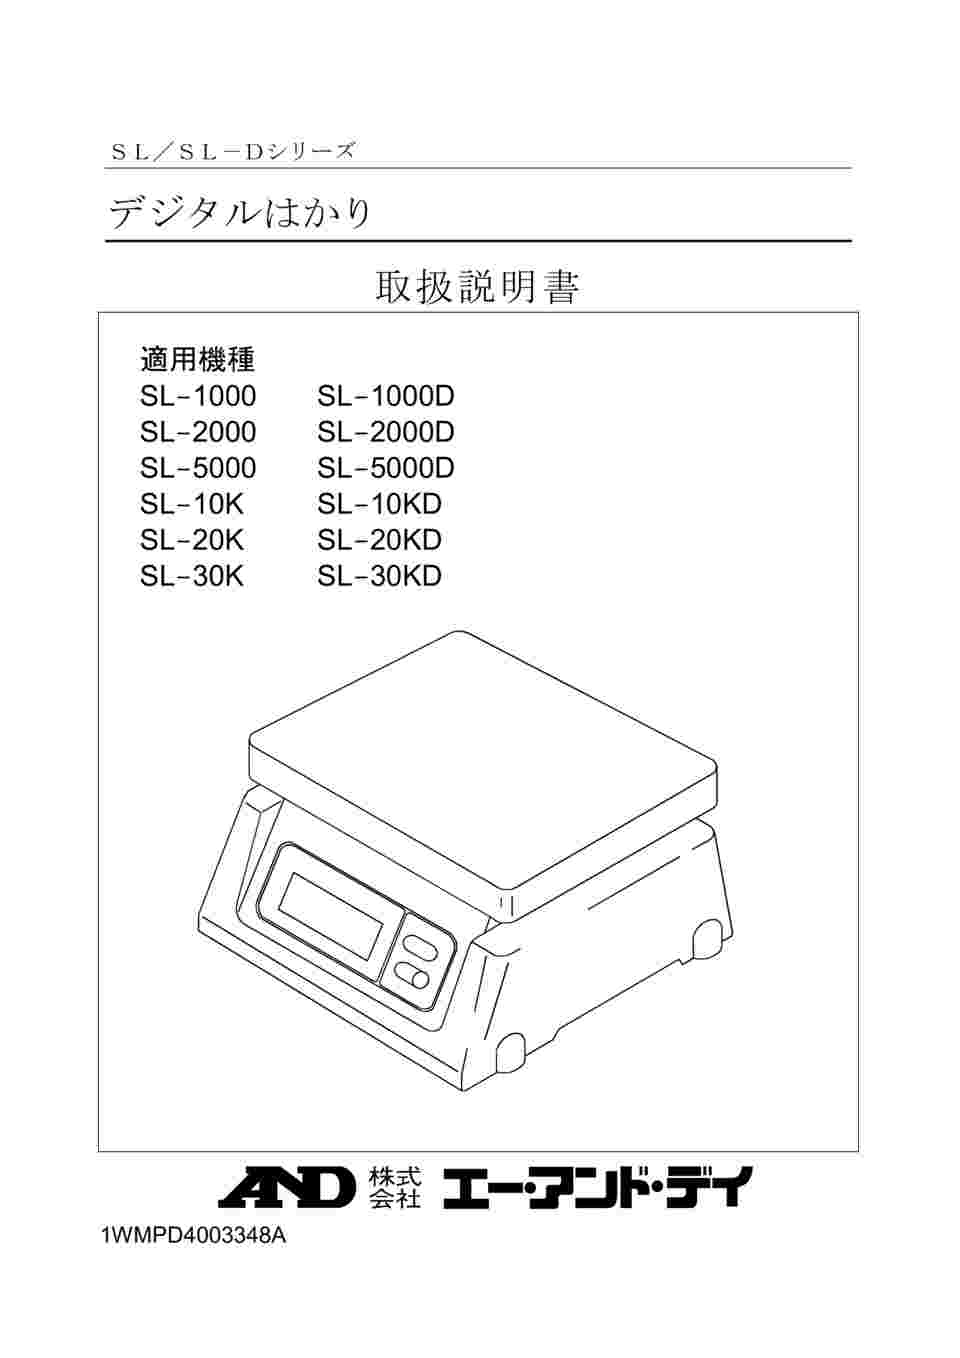 AD デジタル両面表示はかり SL-1000D ひょう量:1000g 最小表示:0.5g 皿寸法:230( W)*190(D)mm 検定無 価格比較